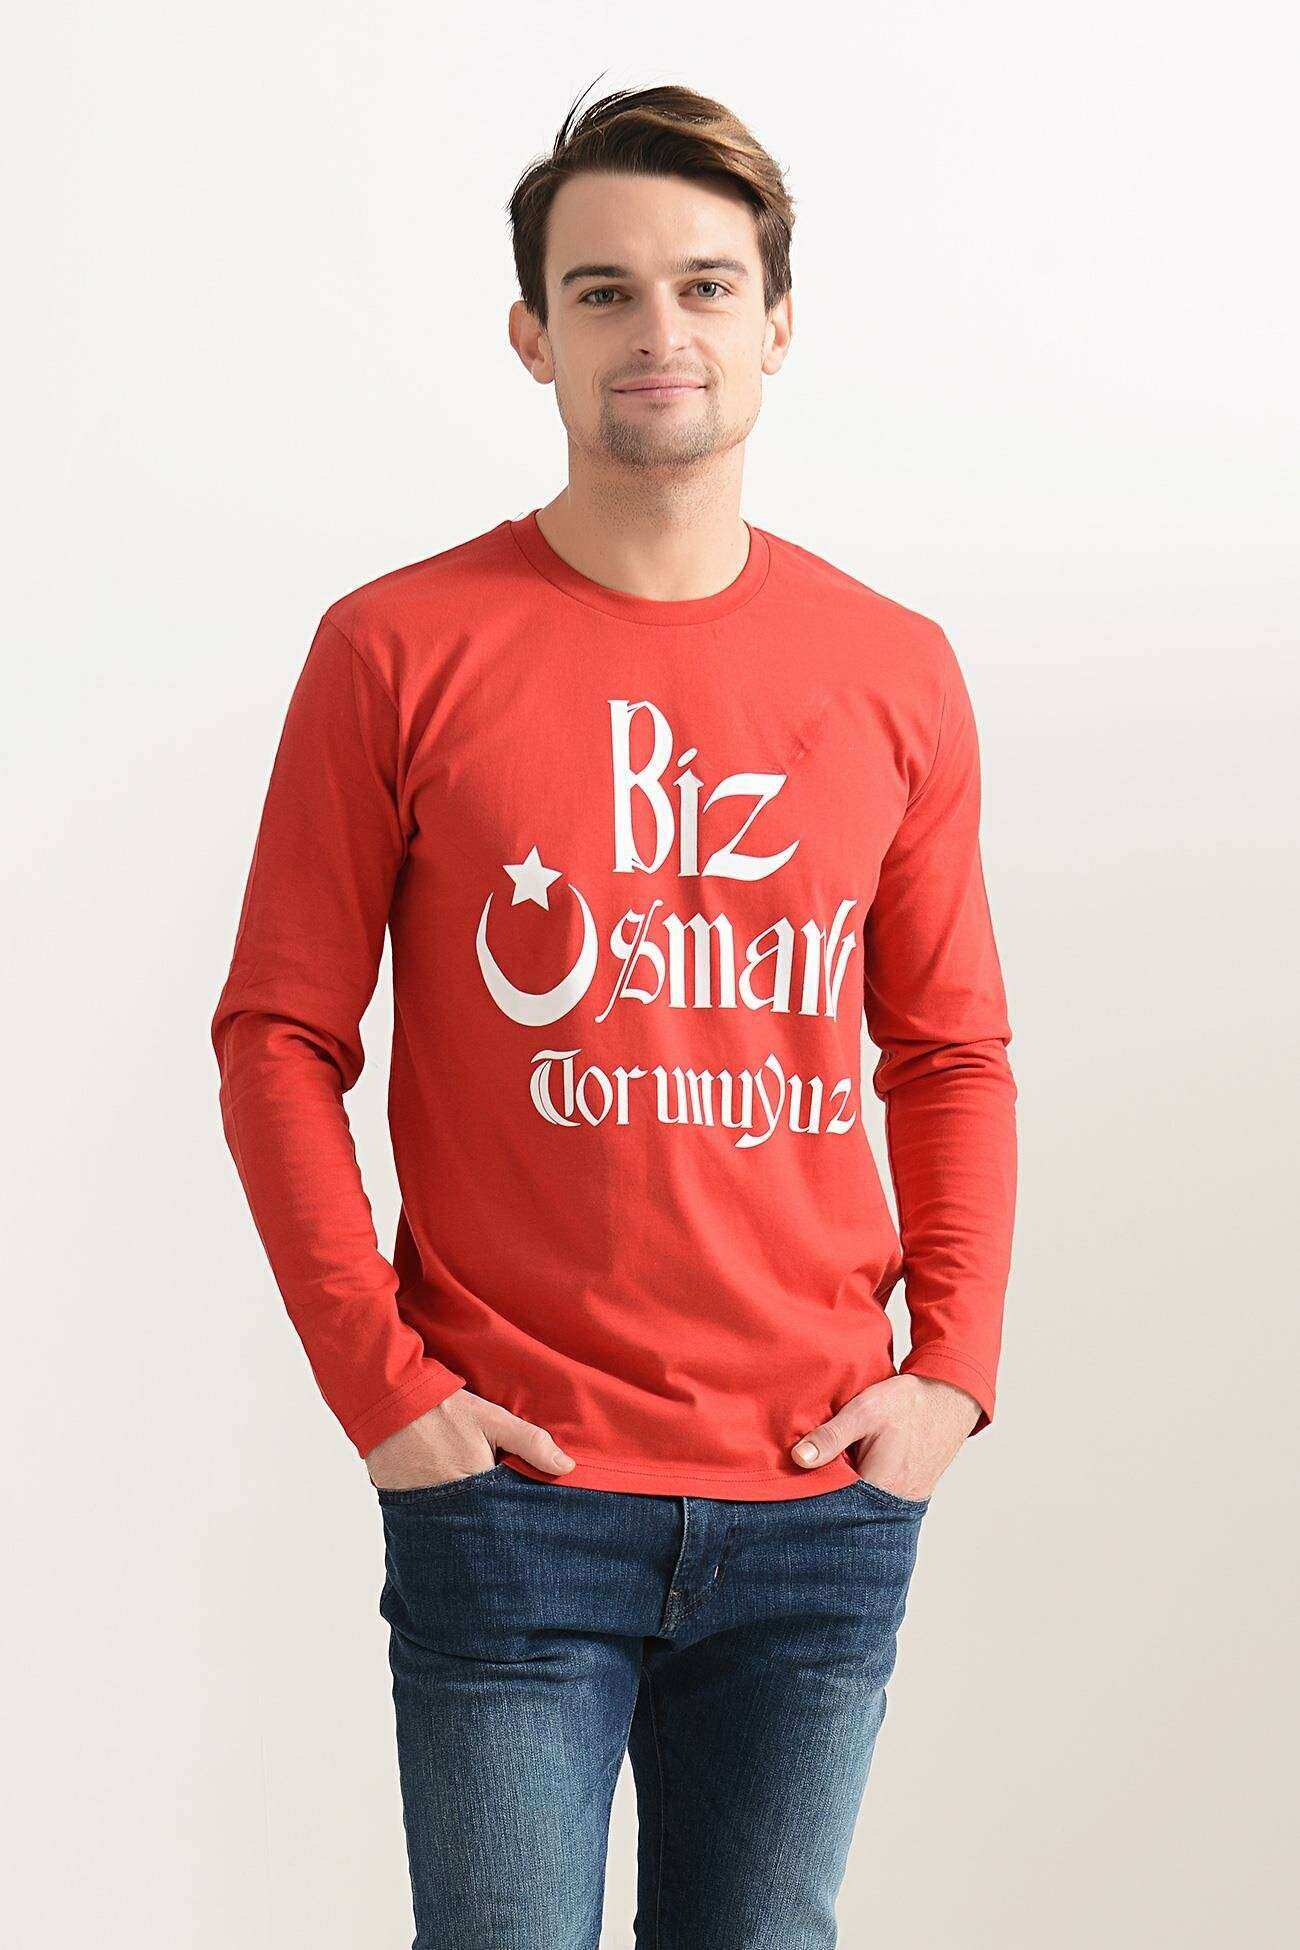 Tshirthane Biz Osmanlı Torunuyuz Baskılı Kırmızı Erkek Sweatshirt Uzun kol